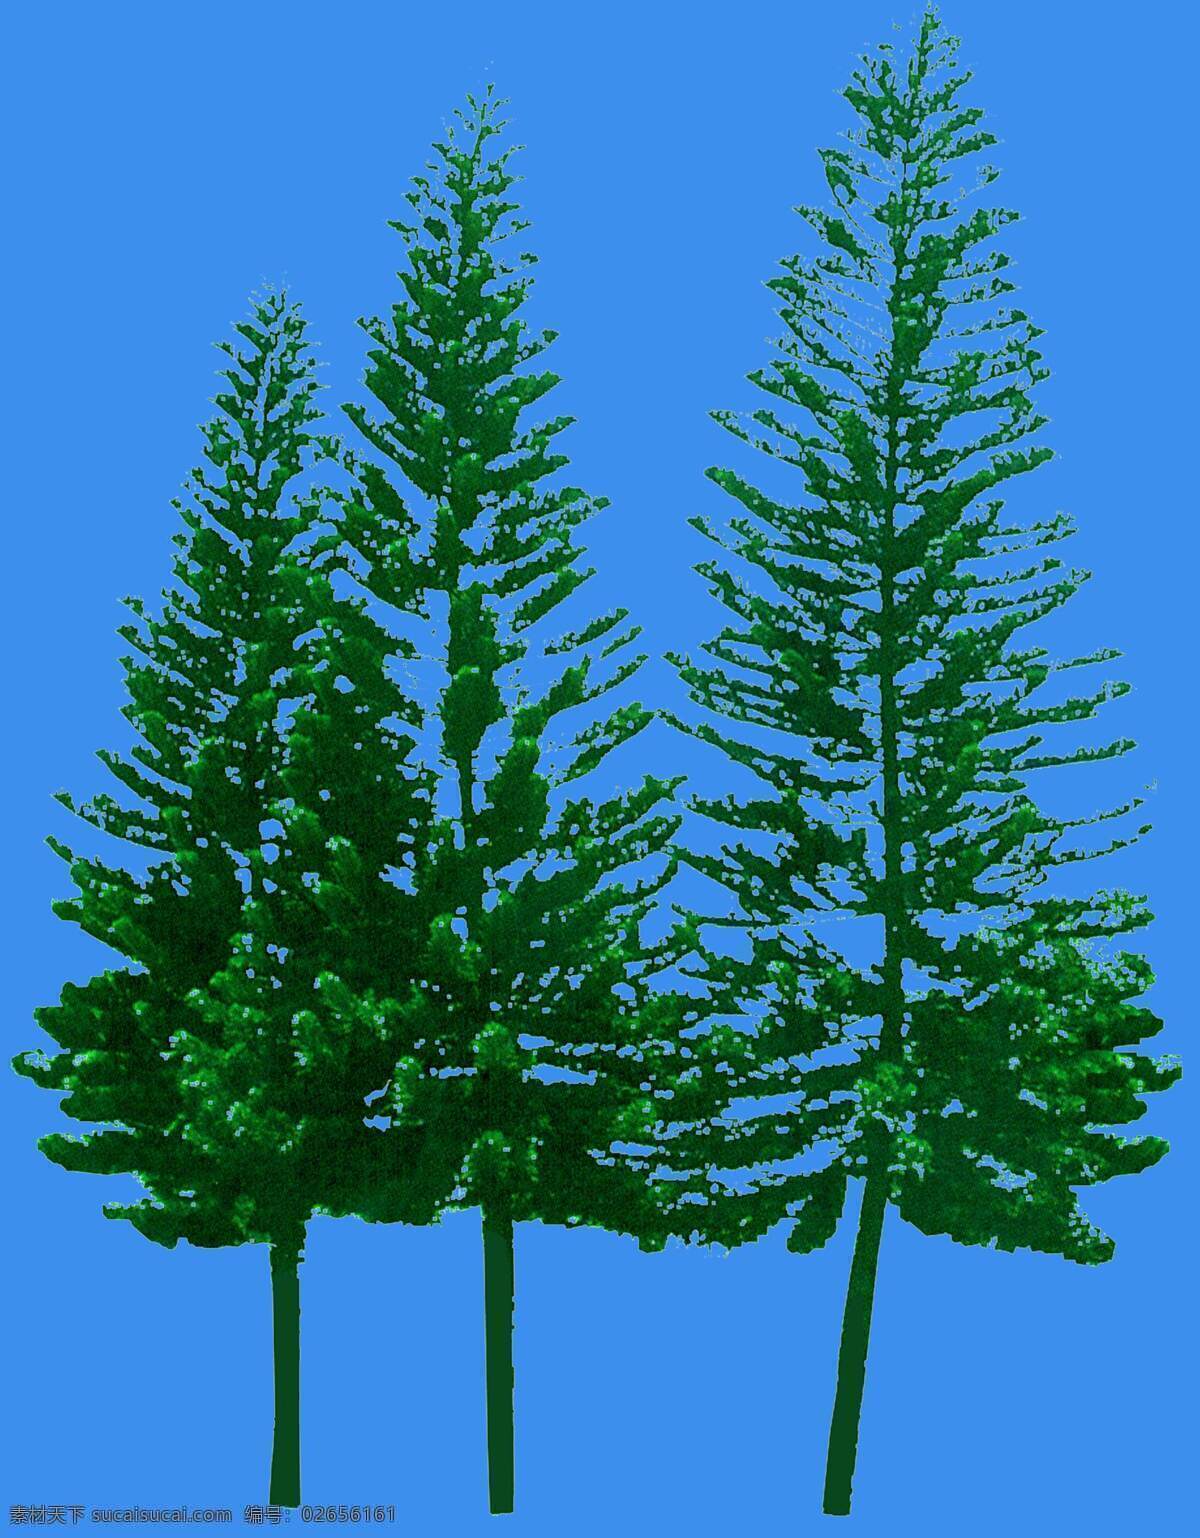 南洋杉 松柏 类 植物 园林植物 松柏类 配景素材 园林 建筑装饰 设计素材 3d模型素材 室内场景模型